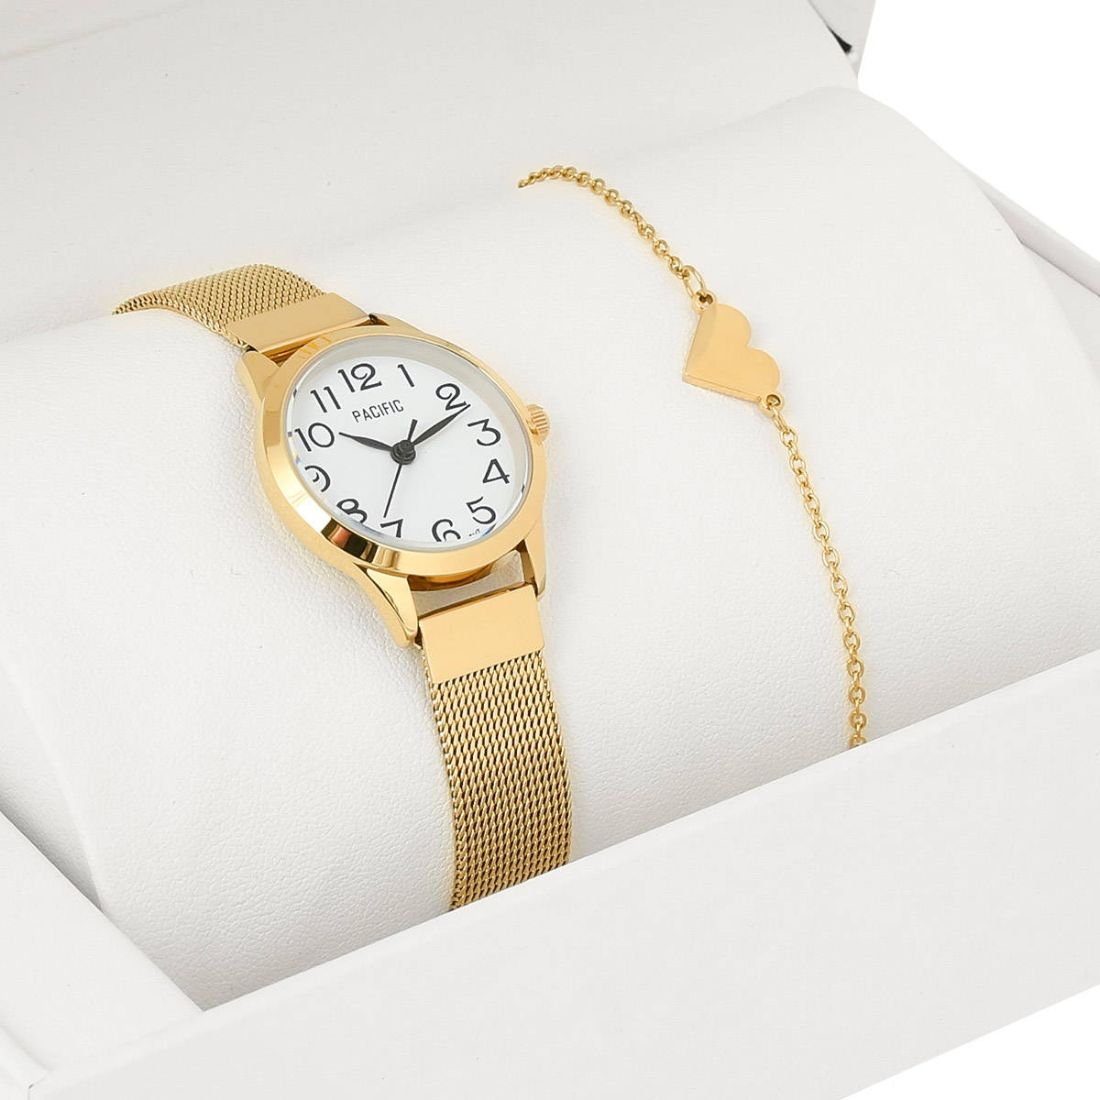 Zestaw prezentowy zegarek i bransoletka Pacific X6131-02A prezent na komunię dla dziewczynki złoty